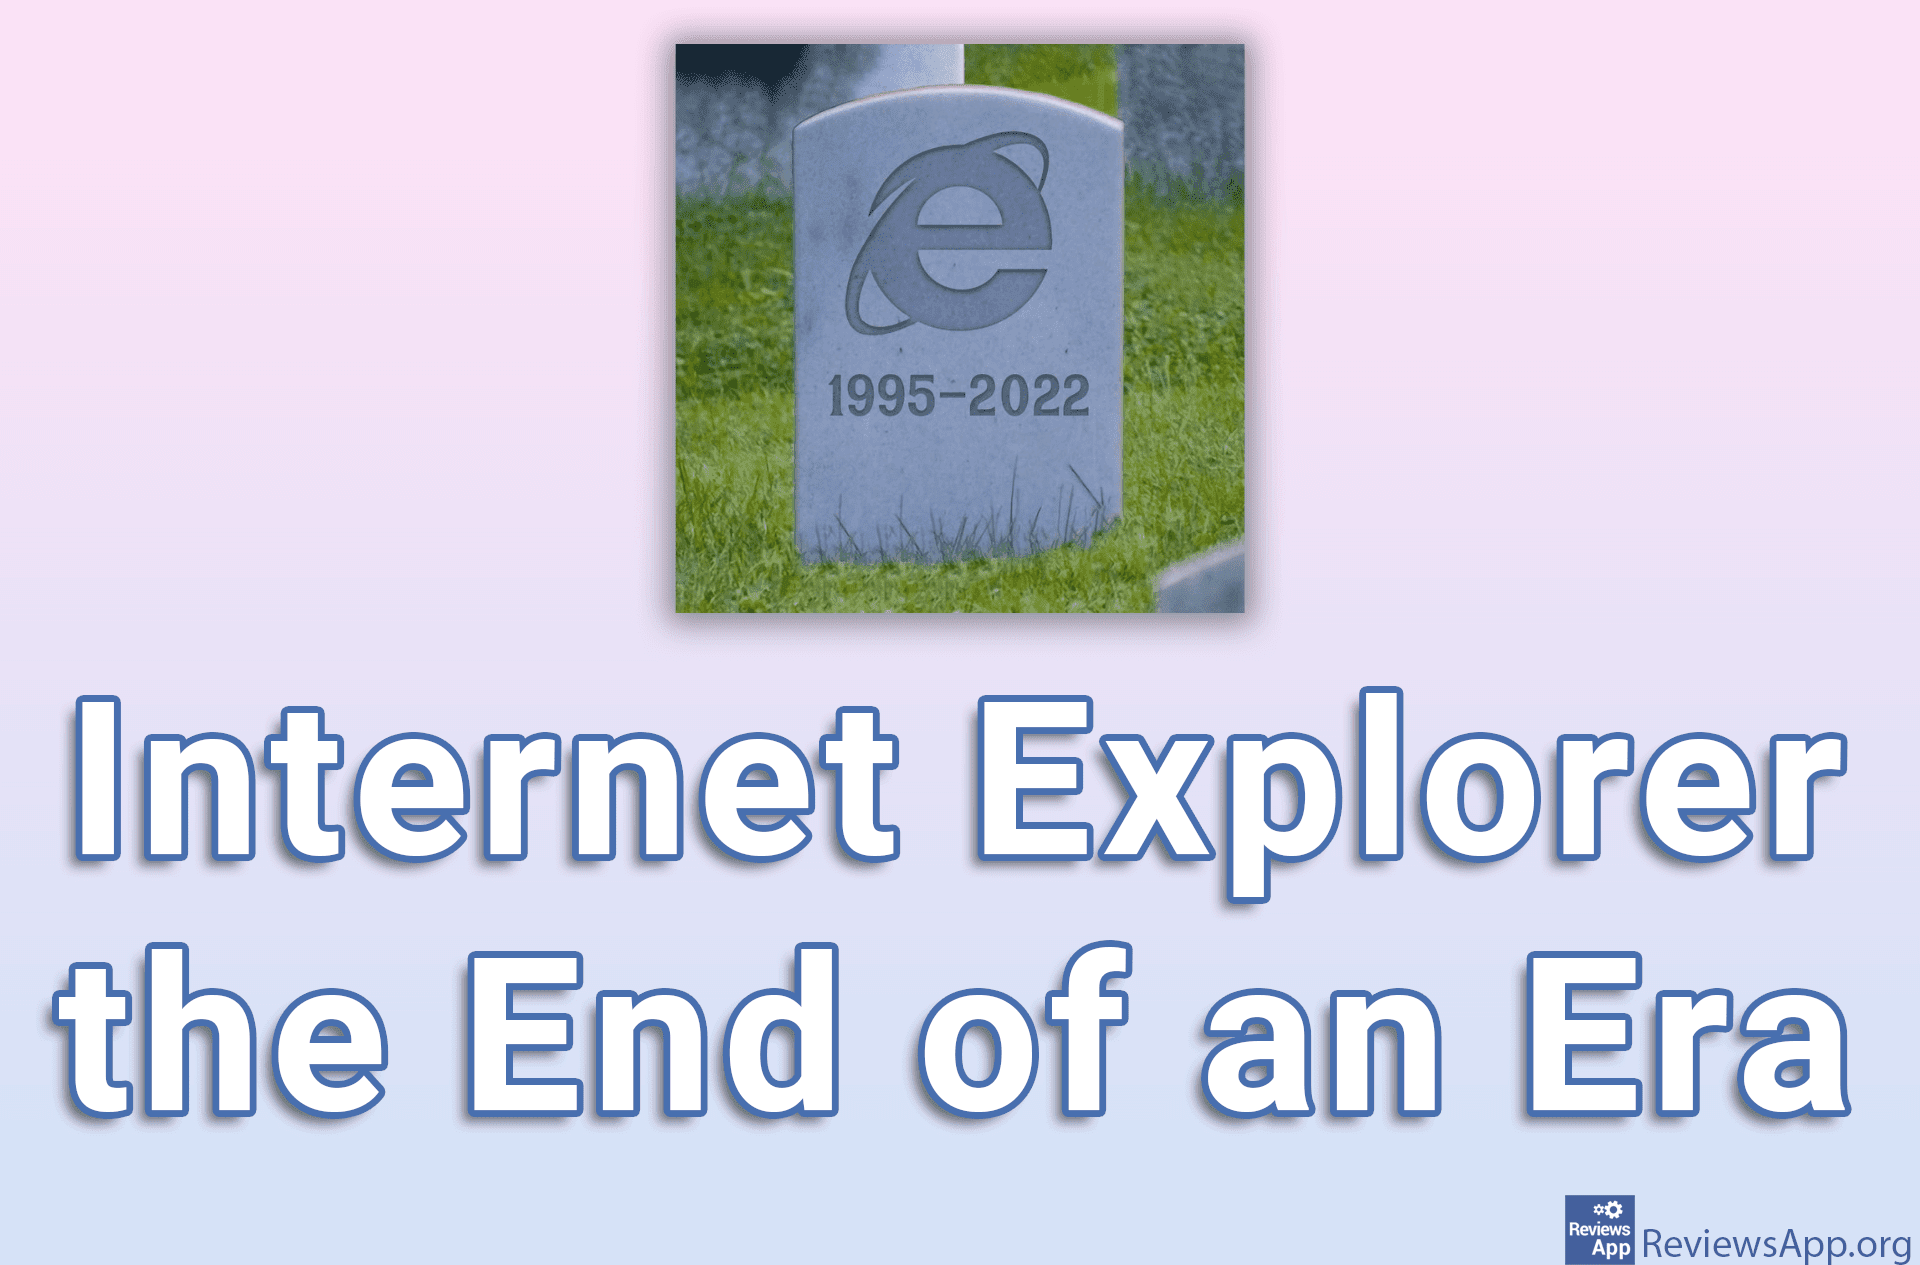 Internet Explorer the End of an Era